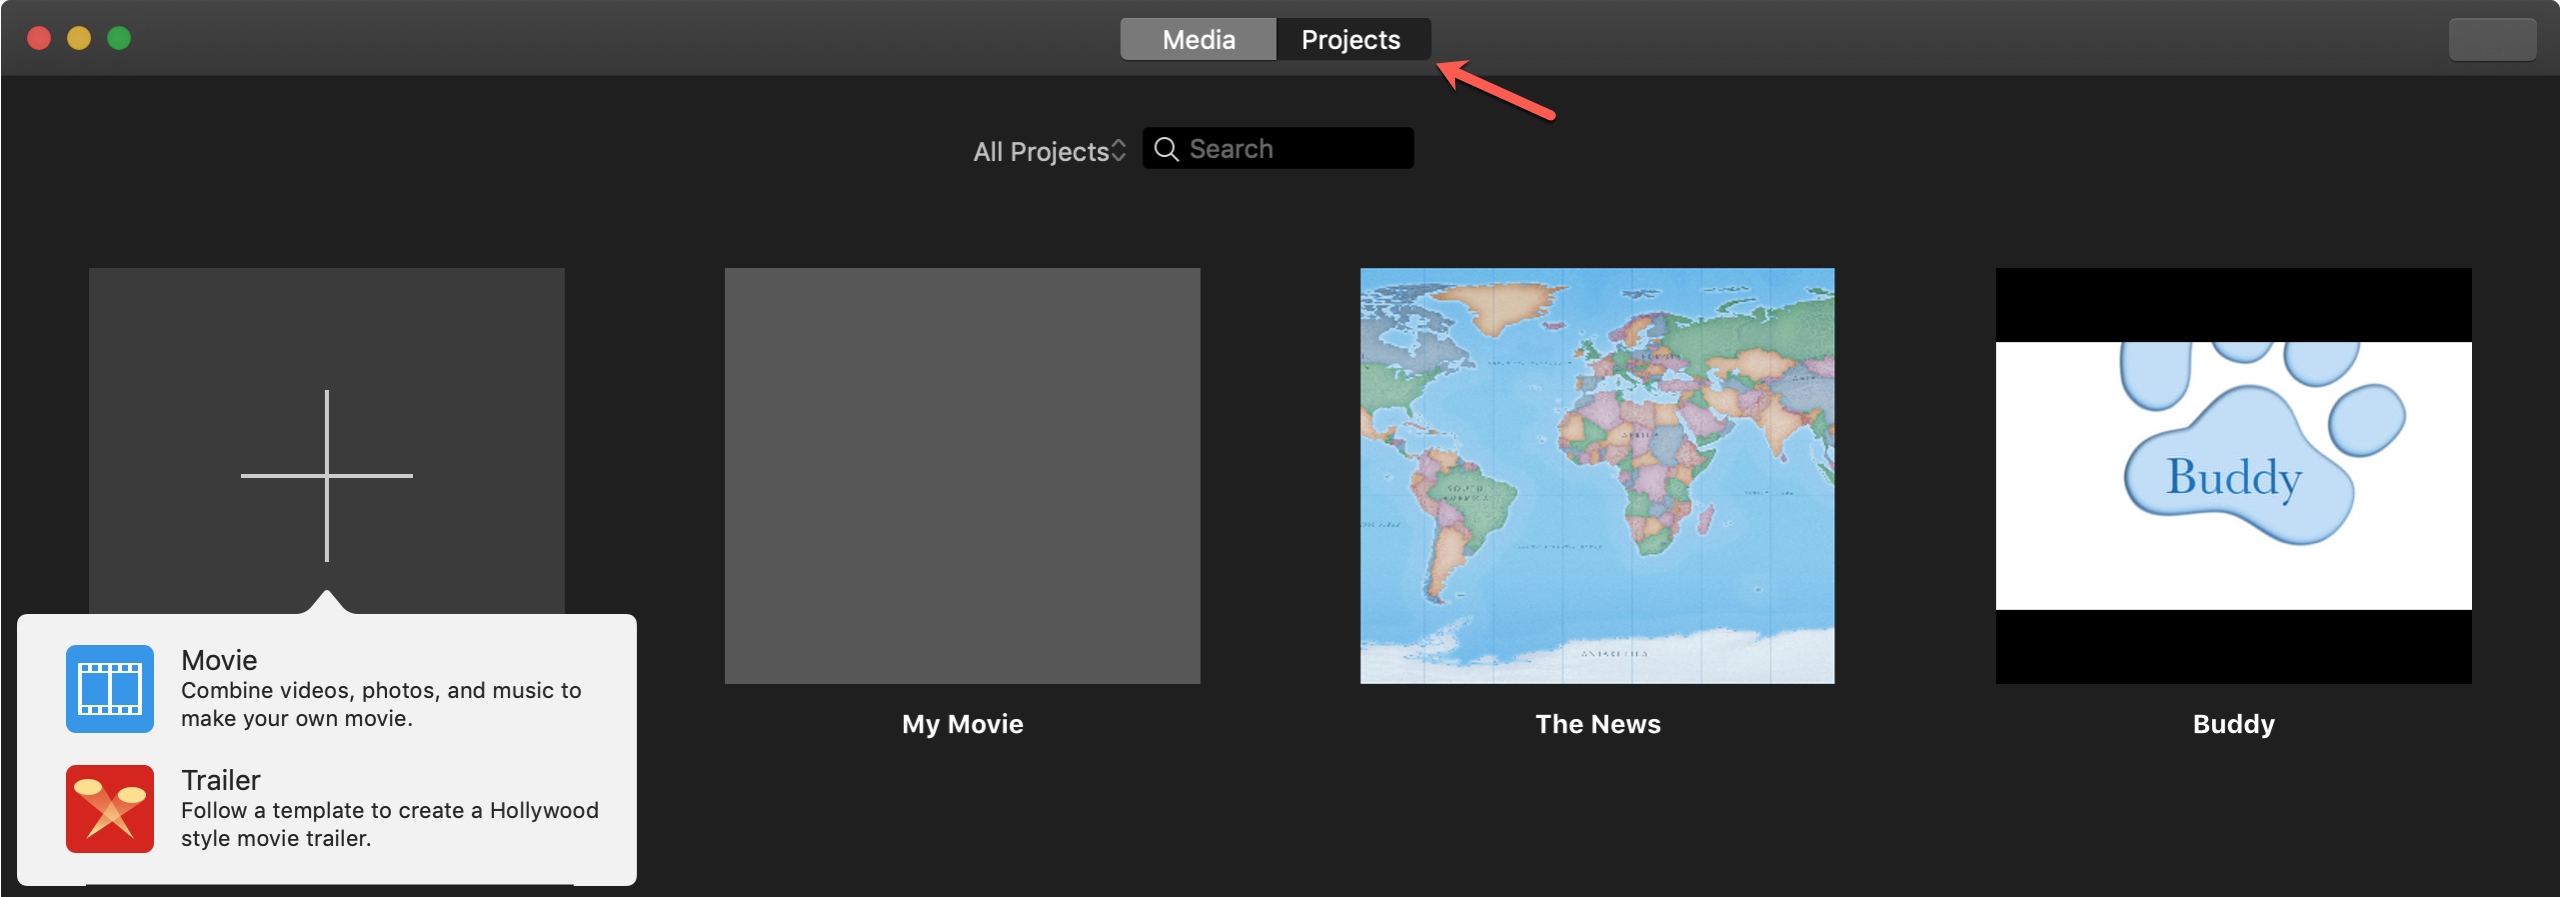 Det nya iMovie-projektet på Mac